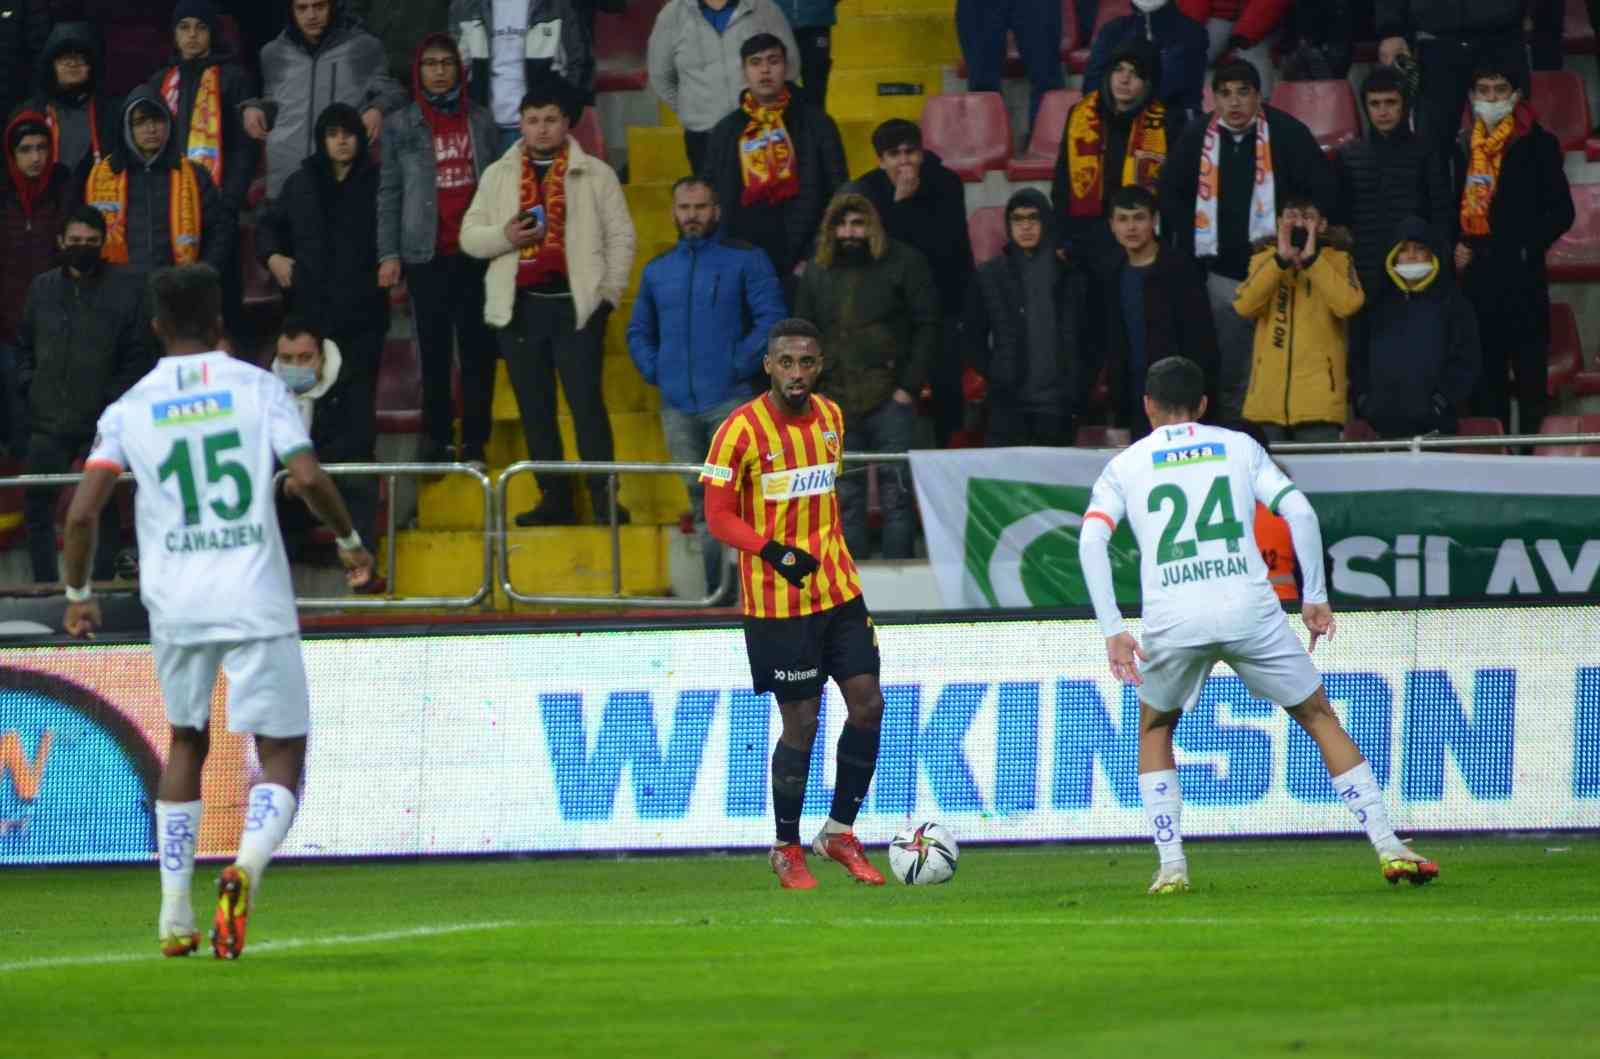 Spor Toto Süper Lig: Kayserispor: 1 -Aytemiz Alanyaspor: 2 (Maç sonucu) #kayseri